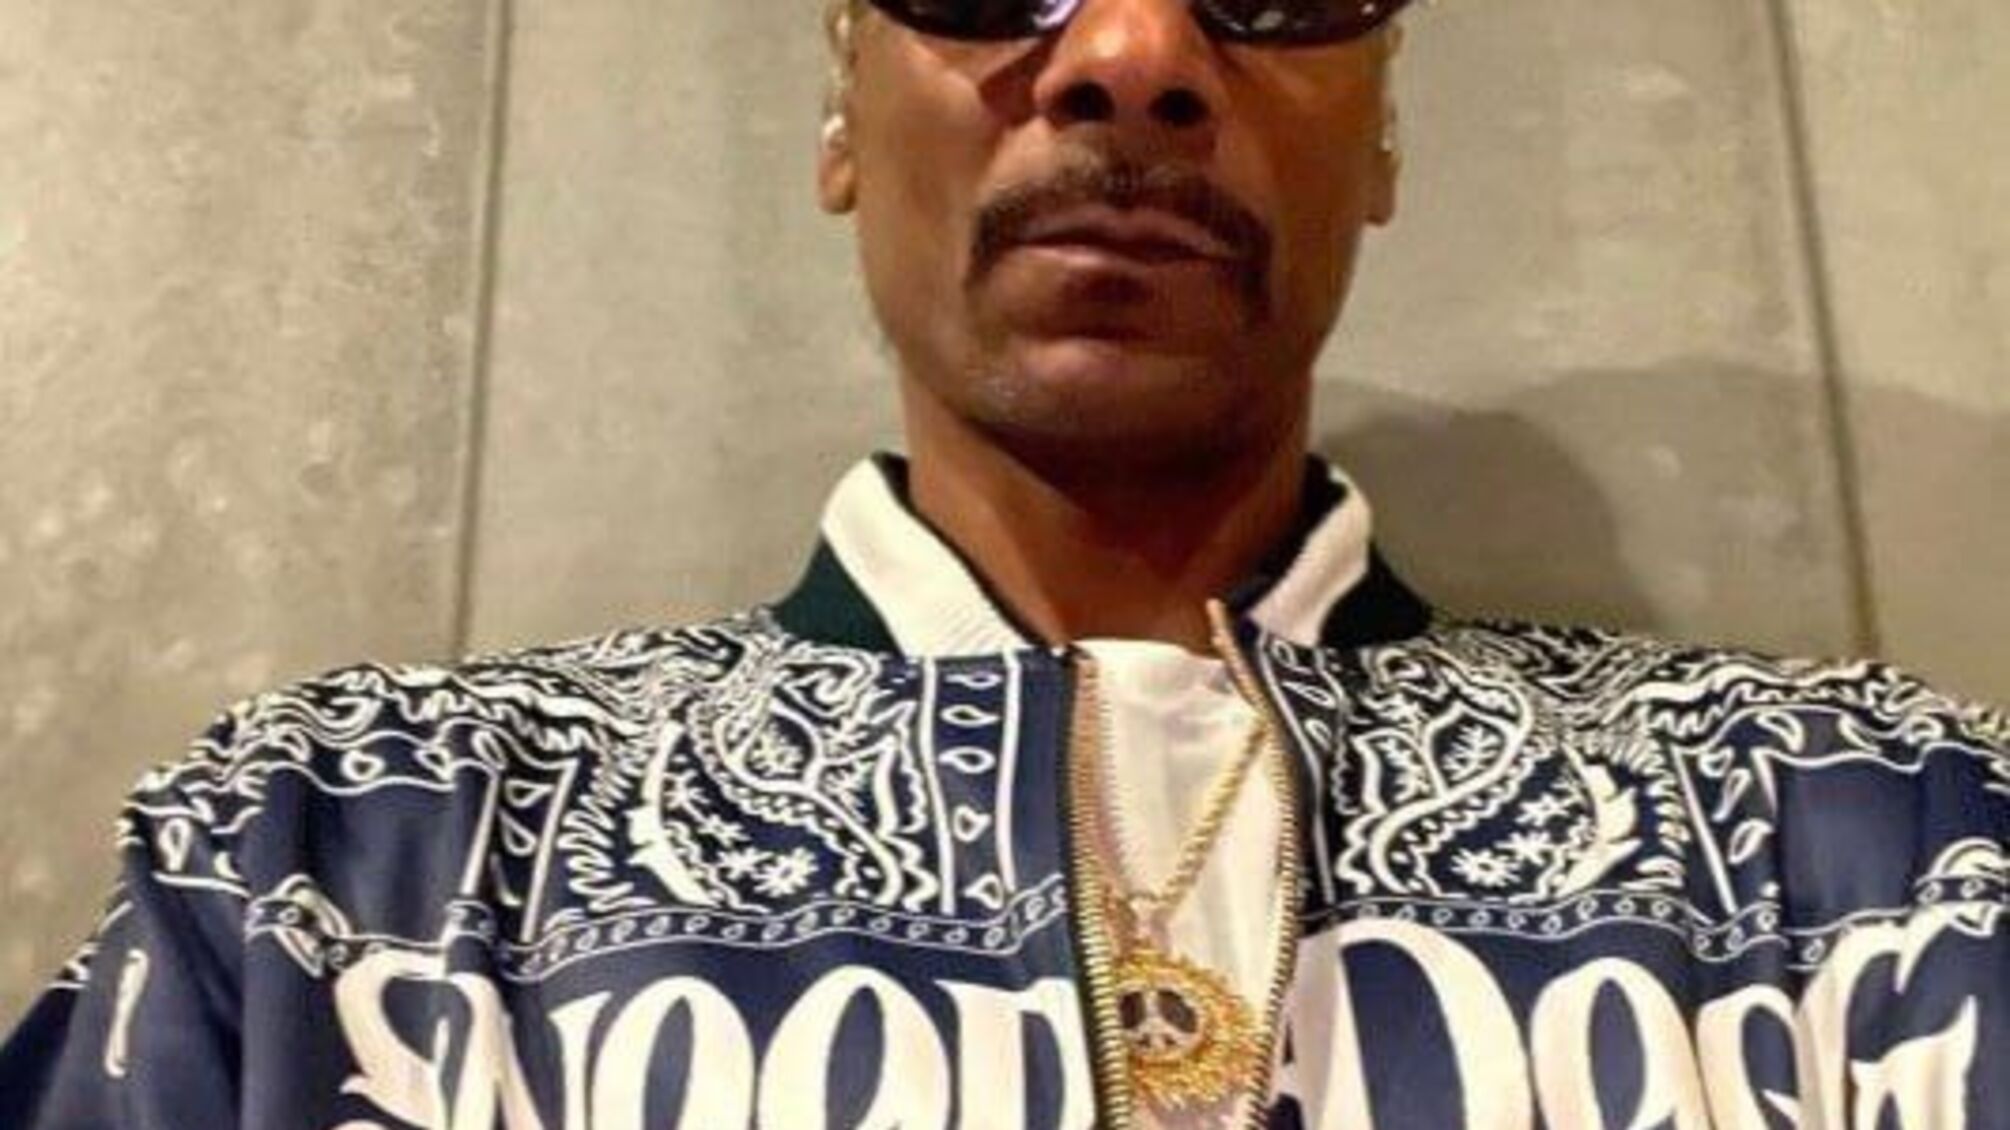  Рэпер Snoop Dogg надел украшение с украинской символикой (фото)